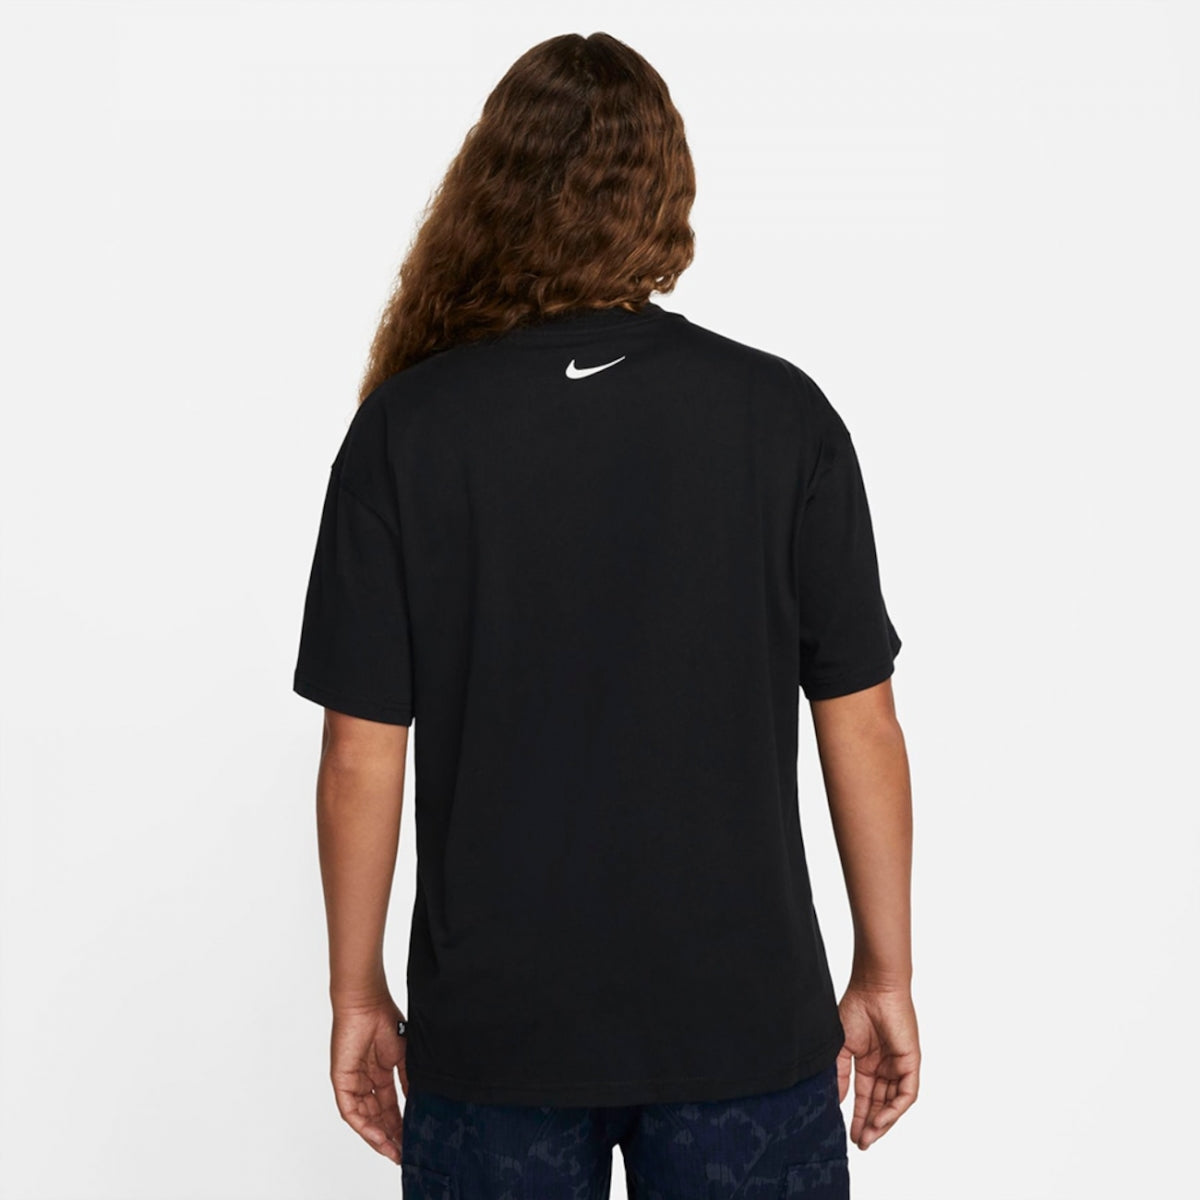 NIKE - Camiseta Nike SB Black - Slow Office